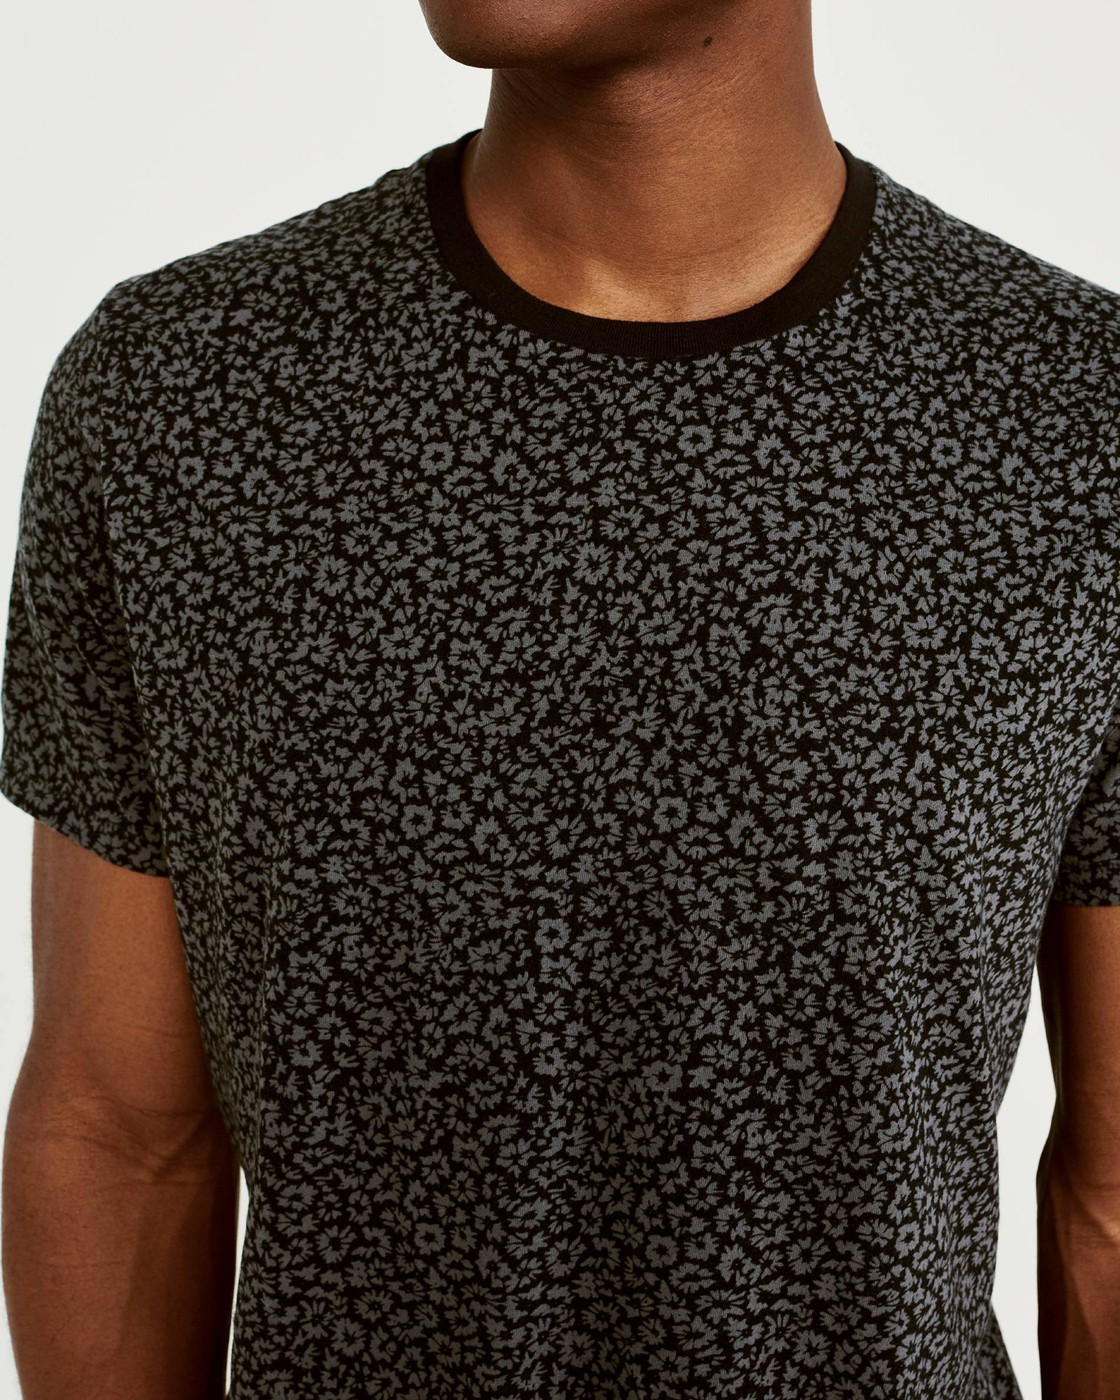 Черная футболка - мужская футболка Abercrombie & Fitch